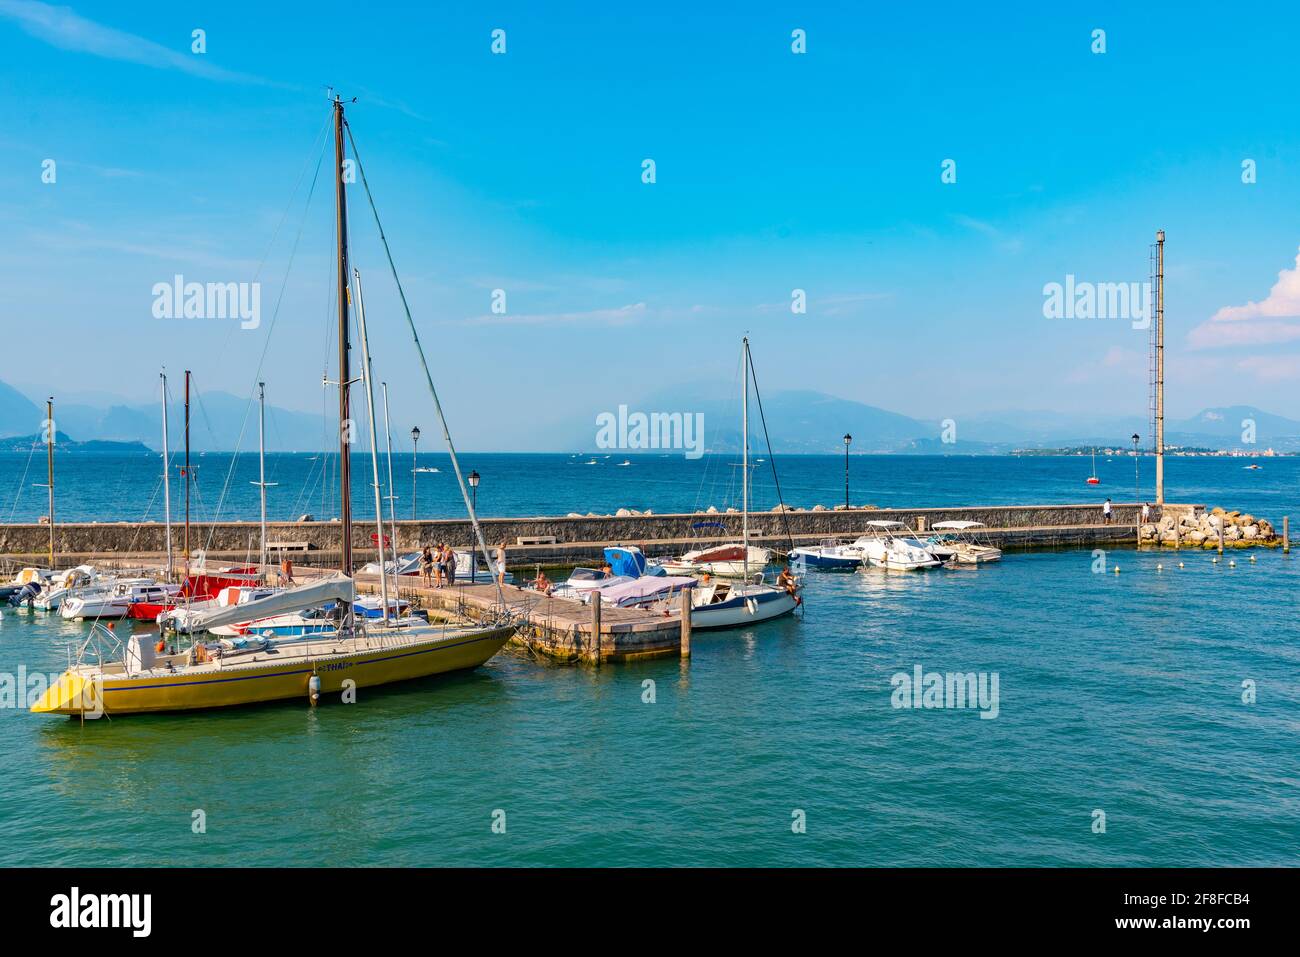 Marina at Desenzano del Garda, Italy Stock Photo